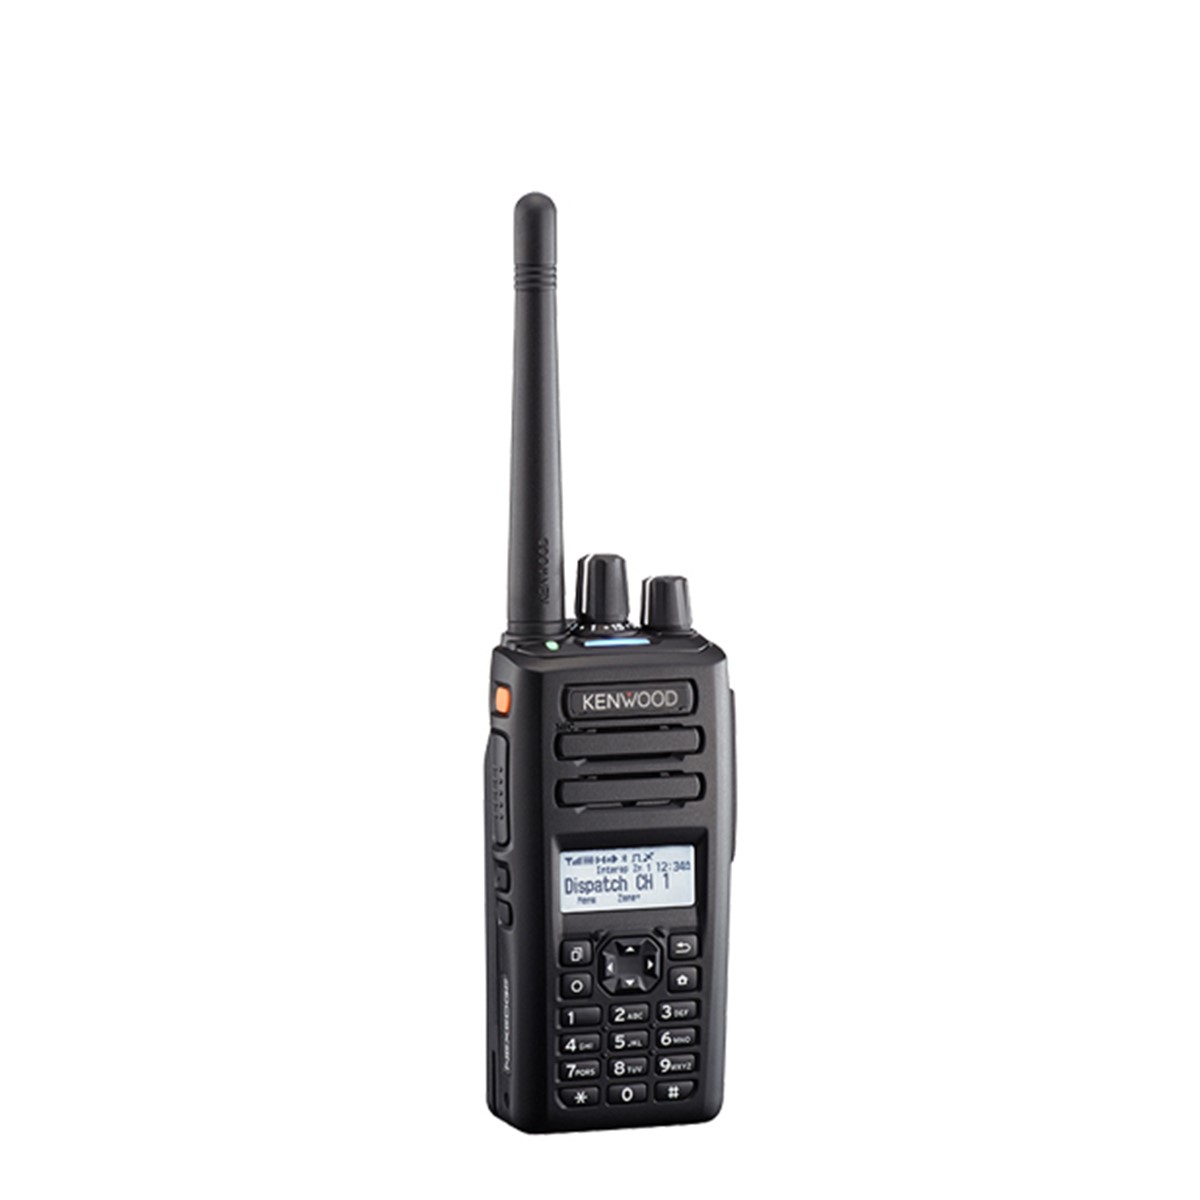 Radio KENWOOD NX-3300 Digital UHF 400-520 MHz con pantalla y teclado completo